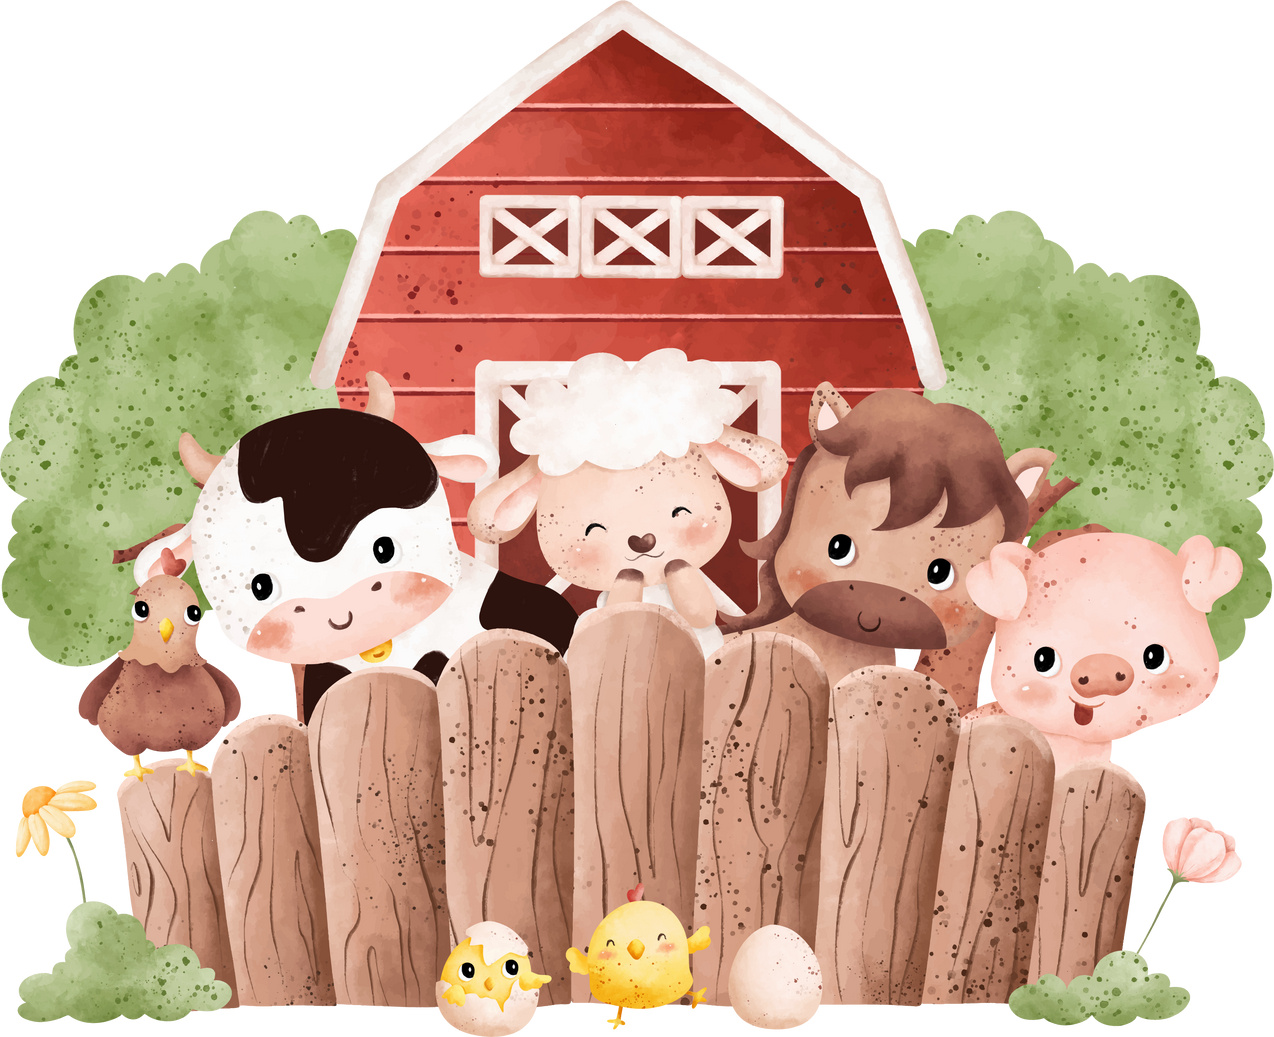 Farm animals and farm house